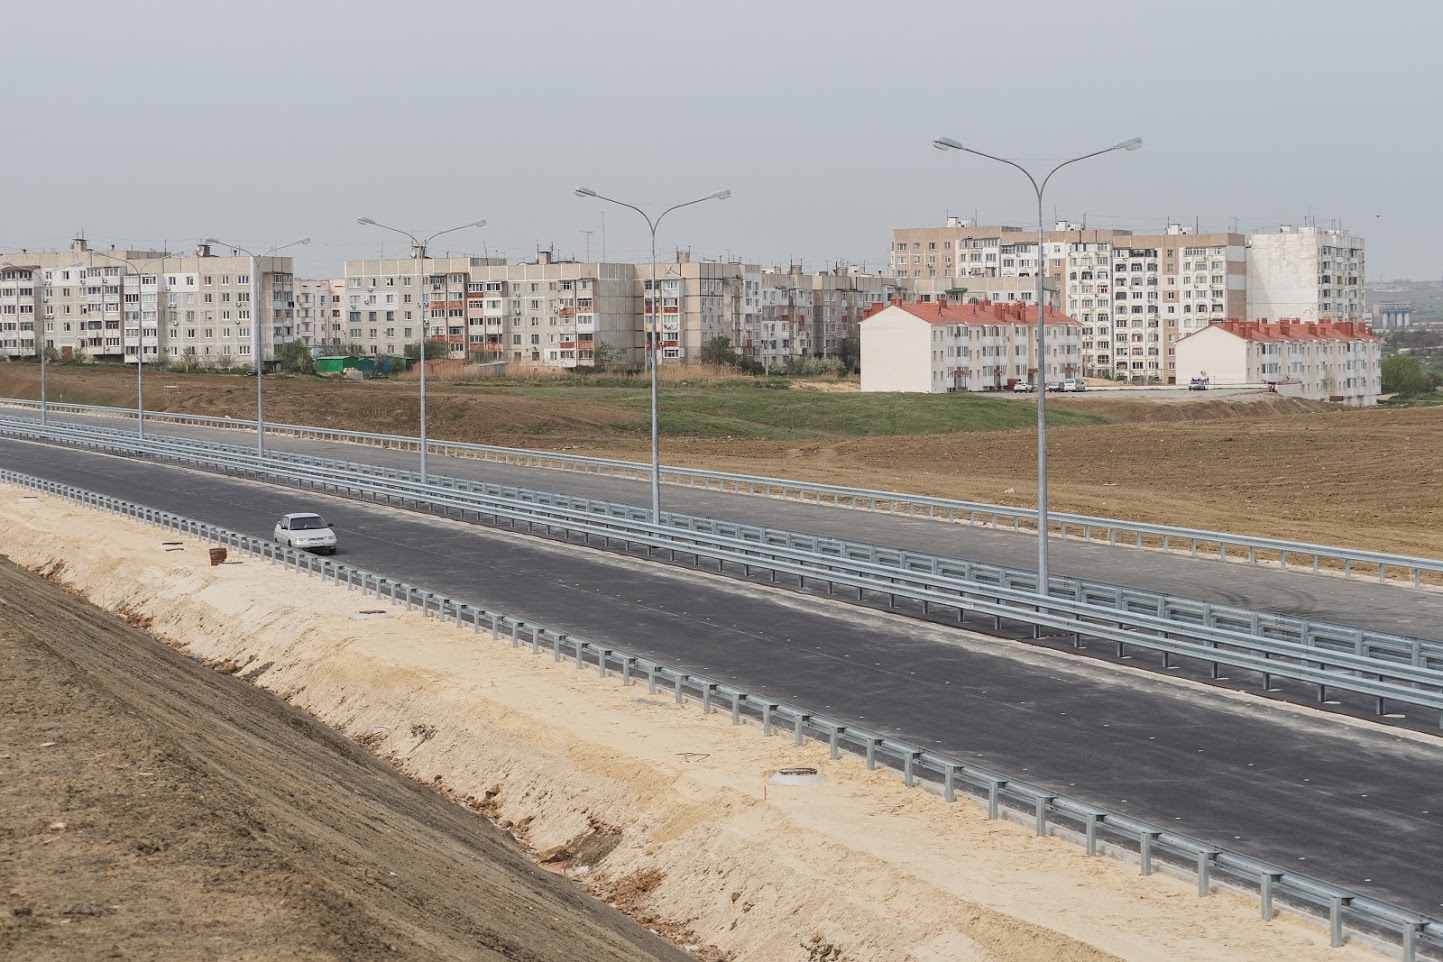 Барьерное ограждение автоподхода к Крымскому мосту установлено на 70% (пресс-релиз Госкомитета дорожного хозяйства РК)